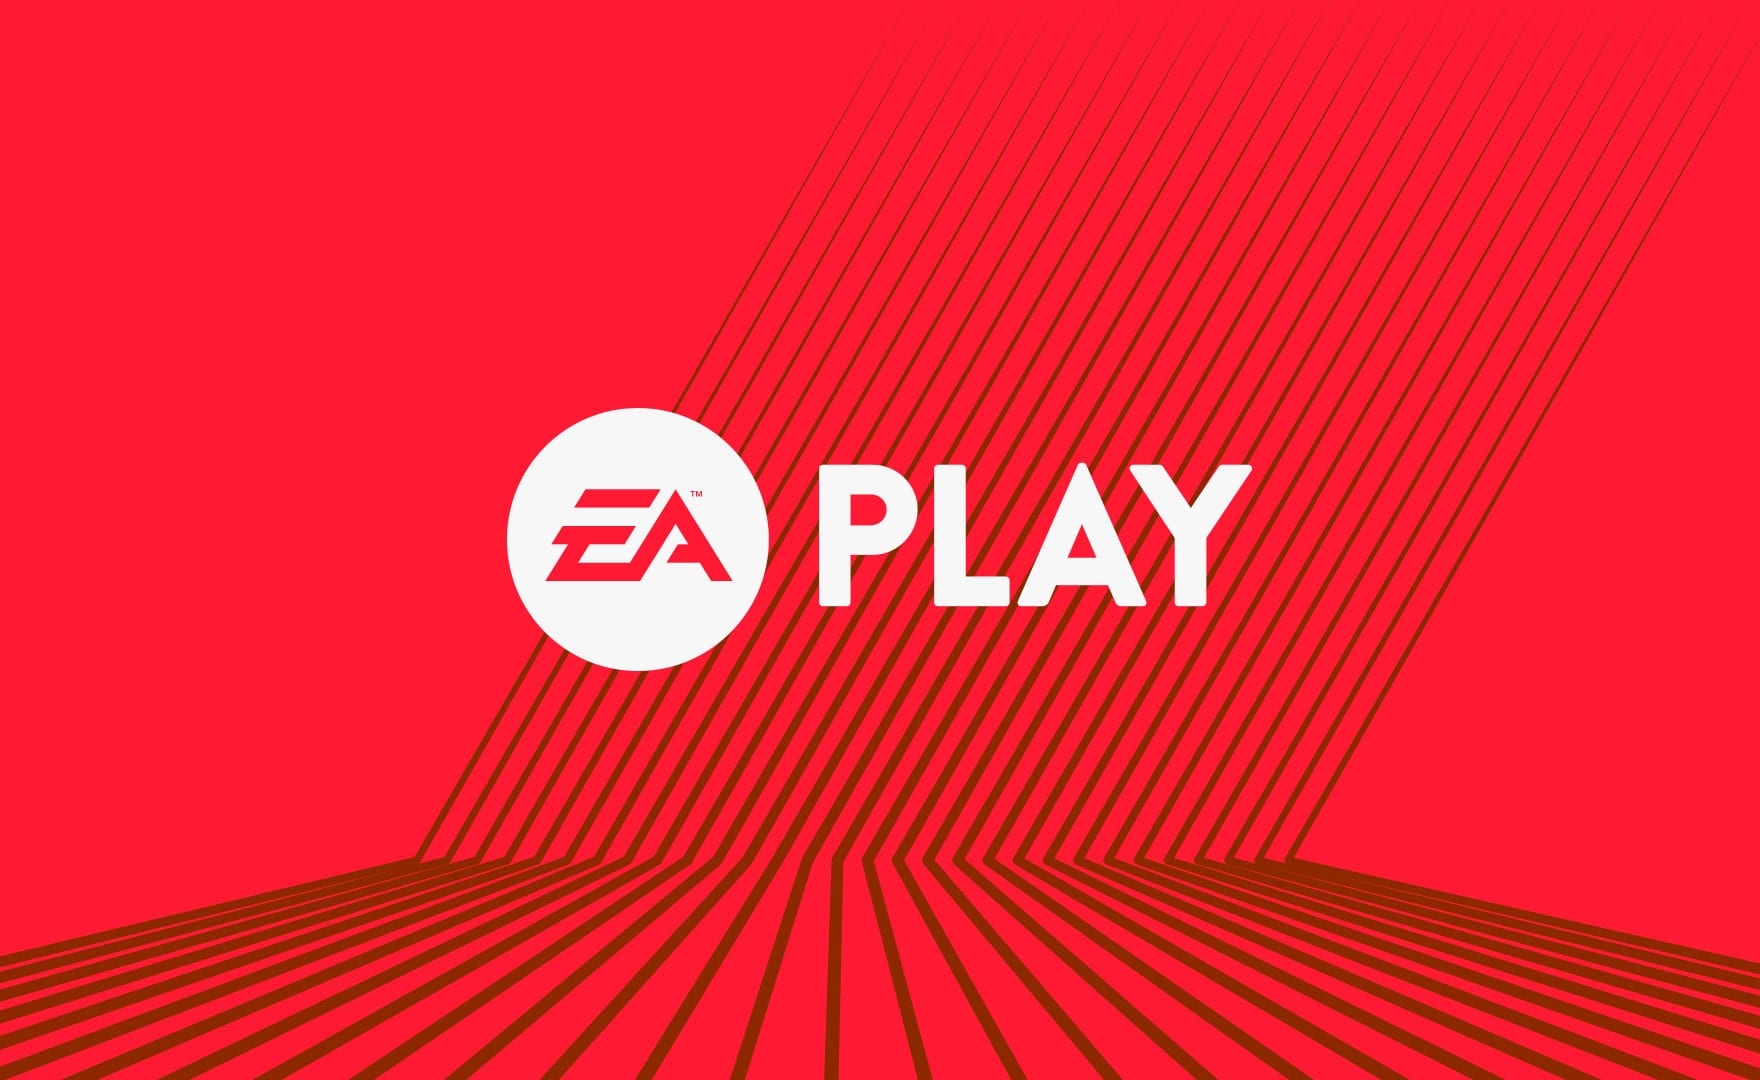 EA Play: la nuova identità dei servizi in abbonamento di Electronic Arts